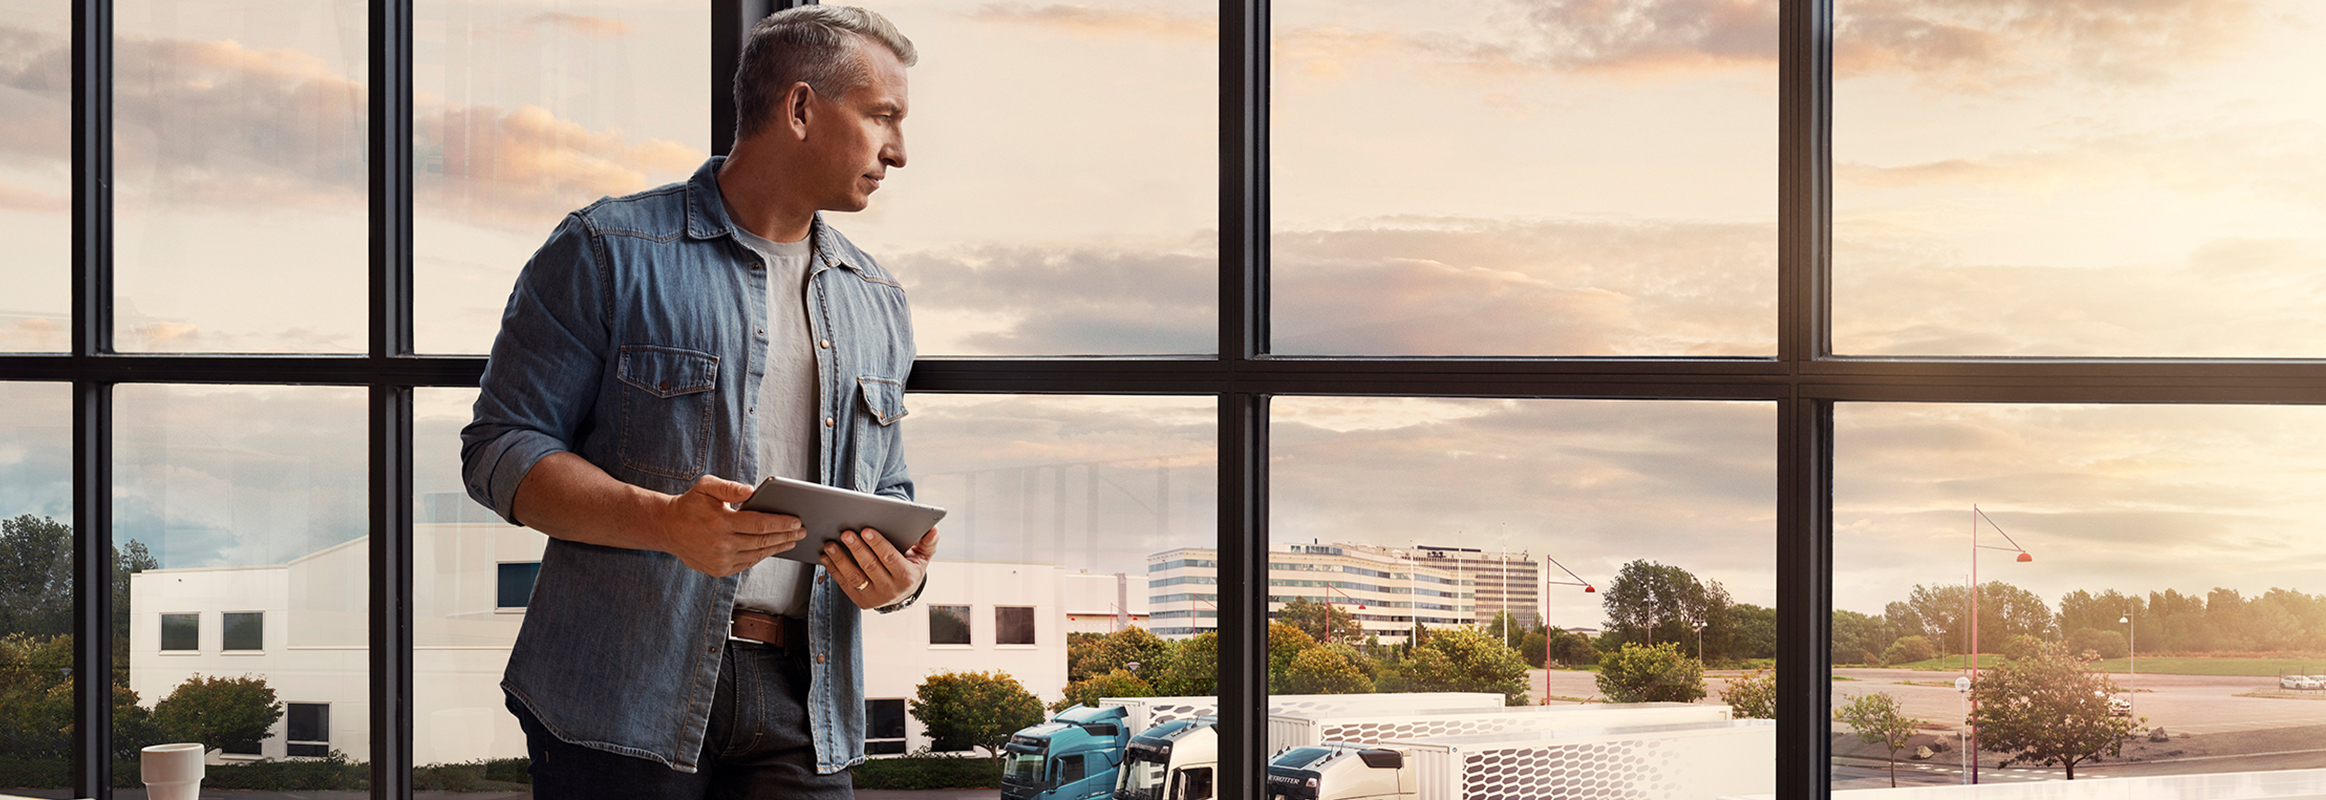 Um homem que segura um tablet junto a uma janela e observa a sua frota de camiões